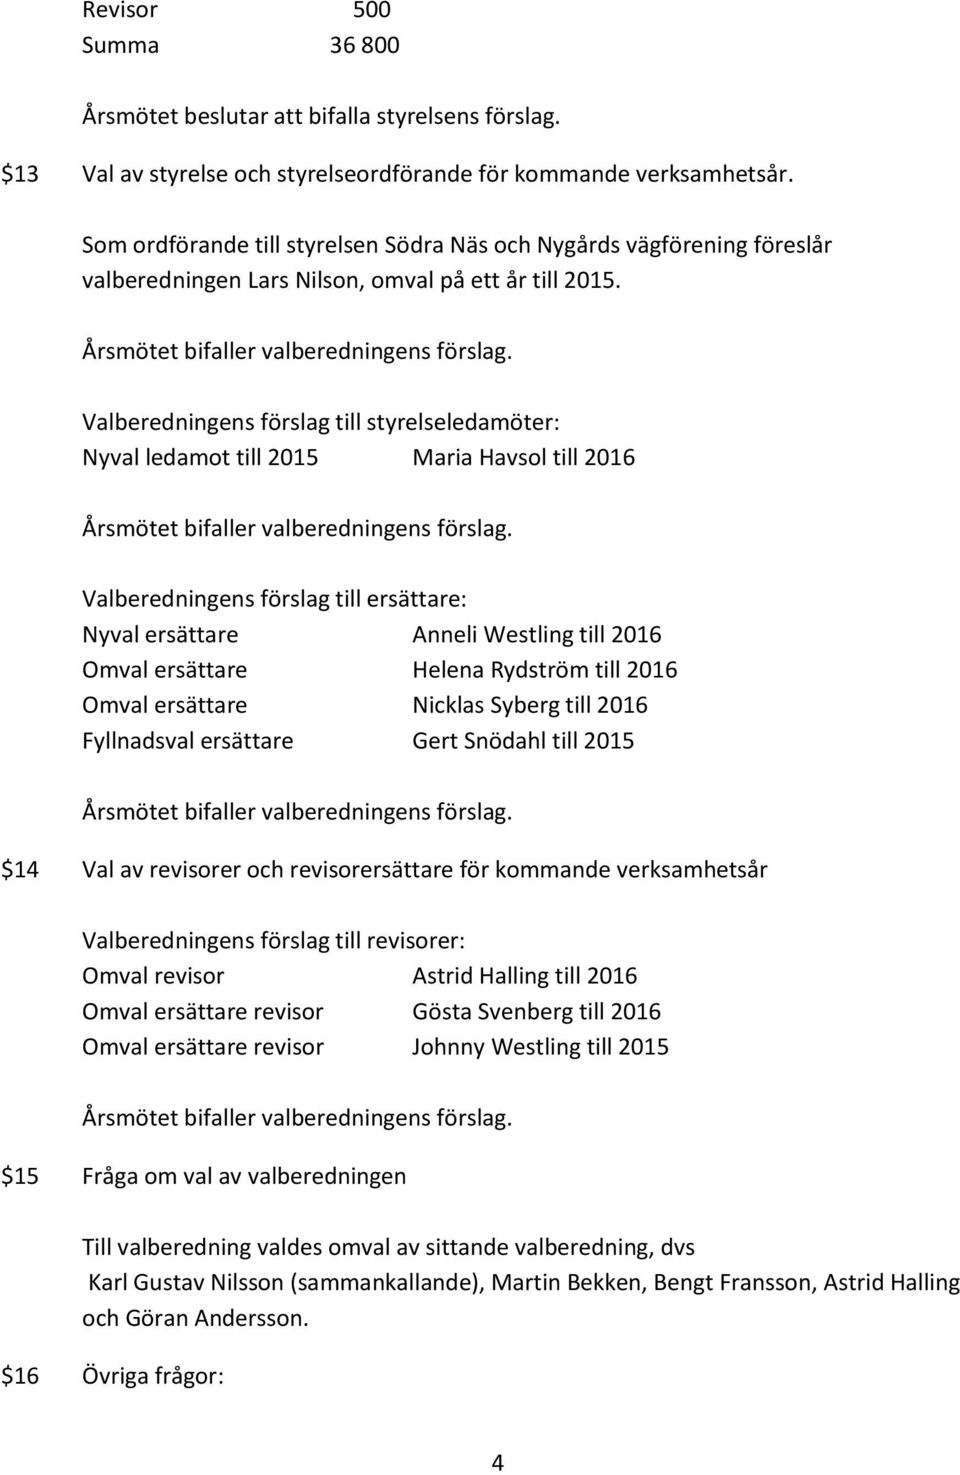 Valberedningens förslag till styrelseledamöter: Nyval ledamot till 2015 Maria Havsol till 2016 Valberedningens förslag till ersättare: Nyval ersättare Anneli Westling till 2016 Omval ersättare Helena